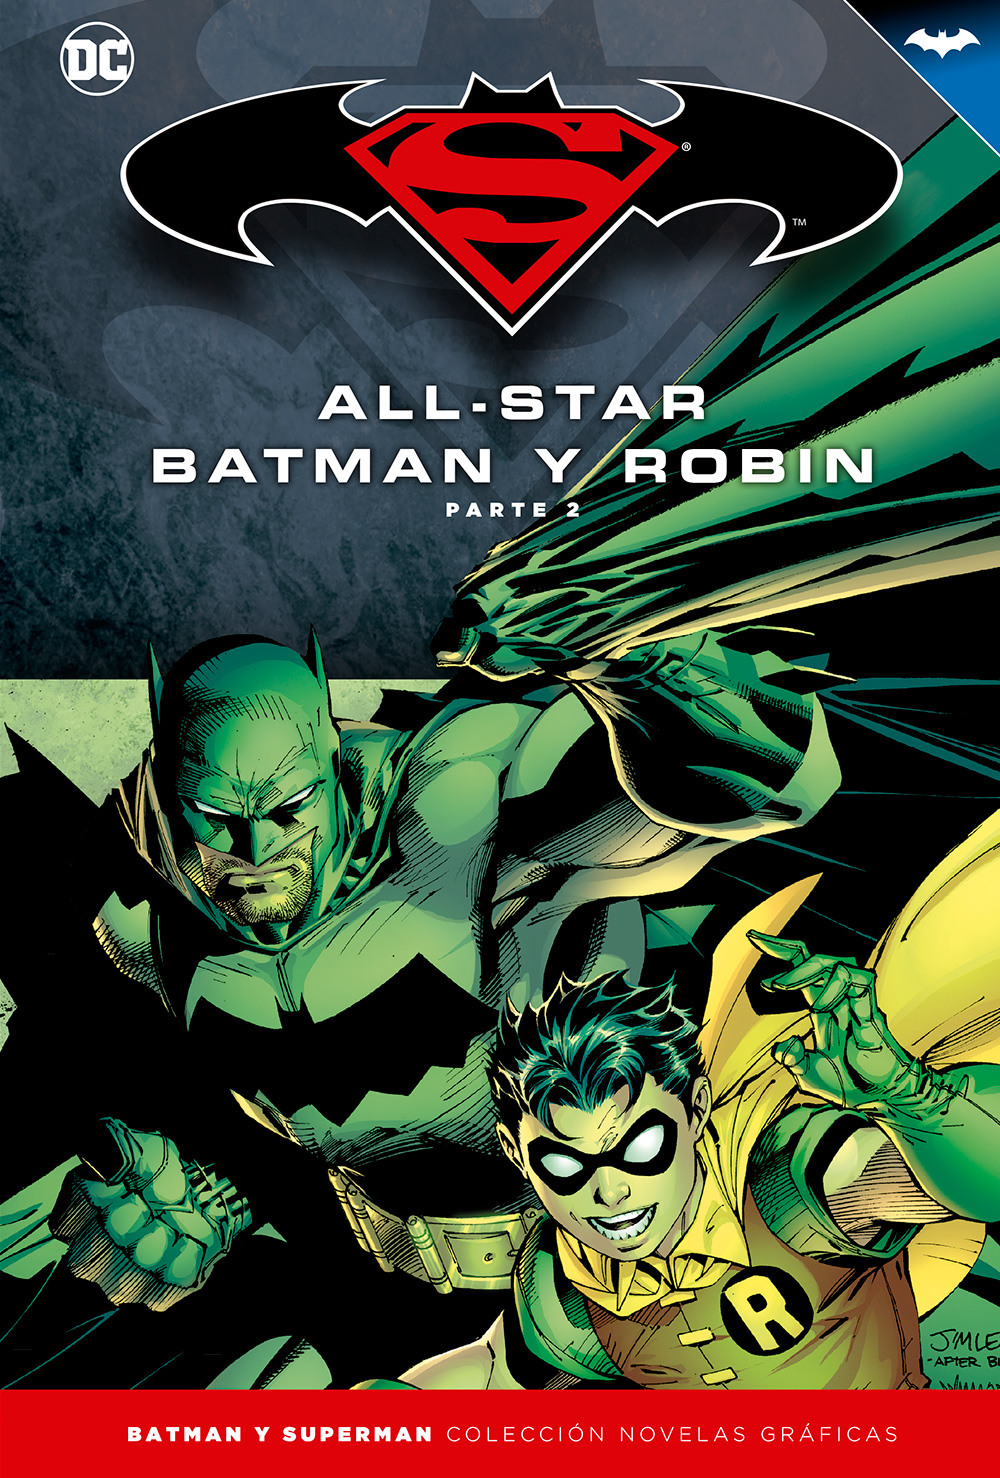 1-5 - [DC - Salvat] Batman y Superman: Colección Novelas Gráficas - Página 3 Portada_BMSM_3_AllStarBatman2